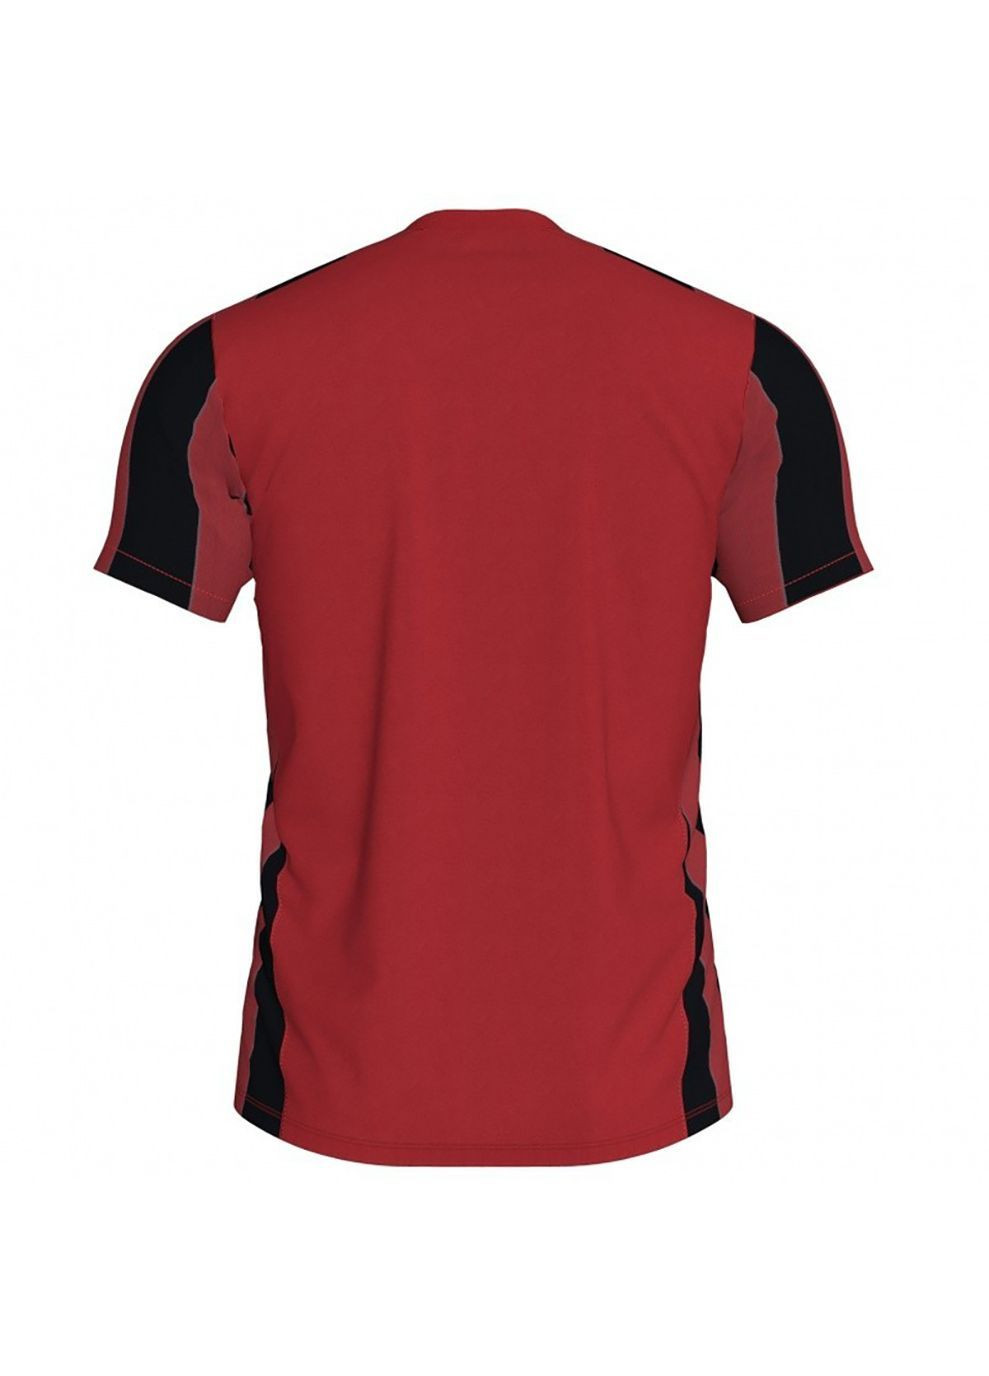 Красная футболка inter t-shirt red-black s/s красный,черный Joma